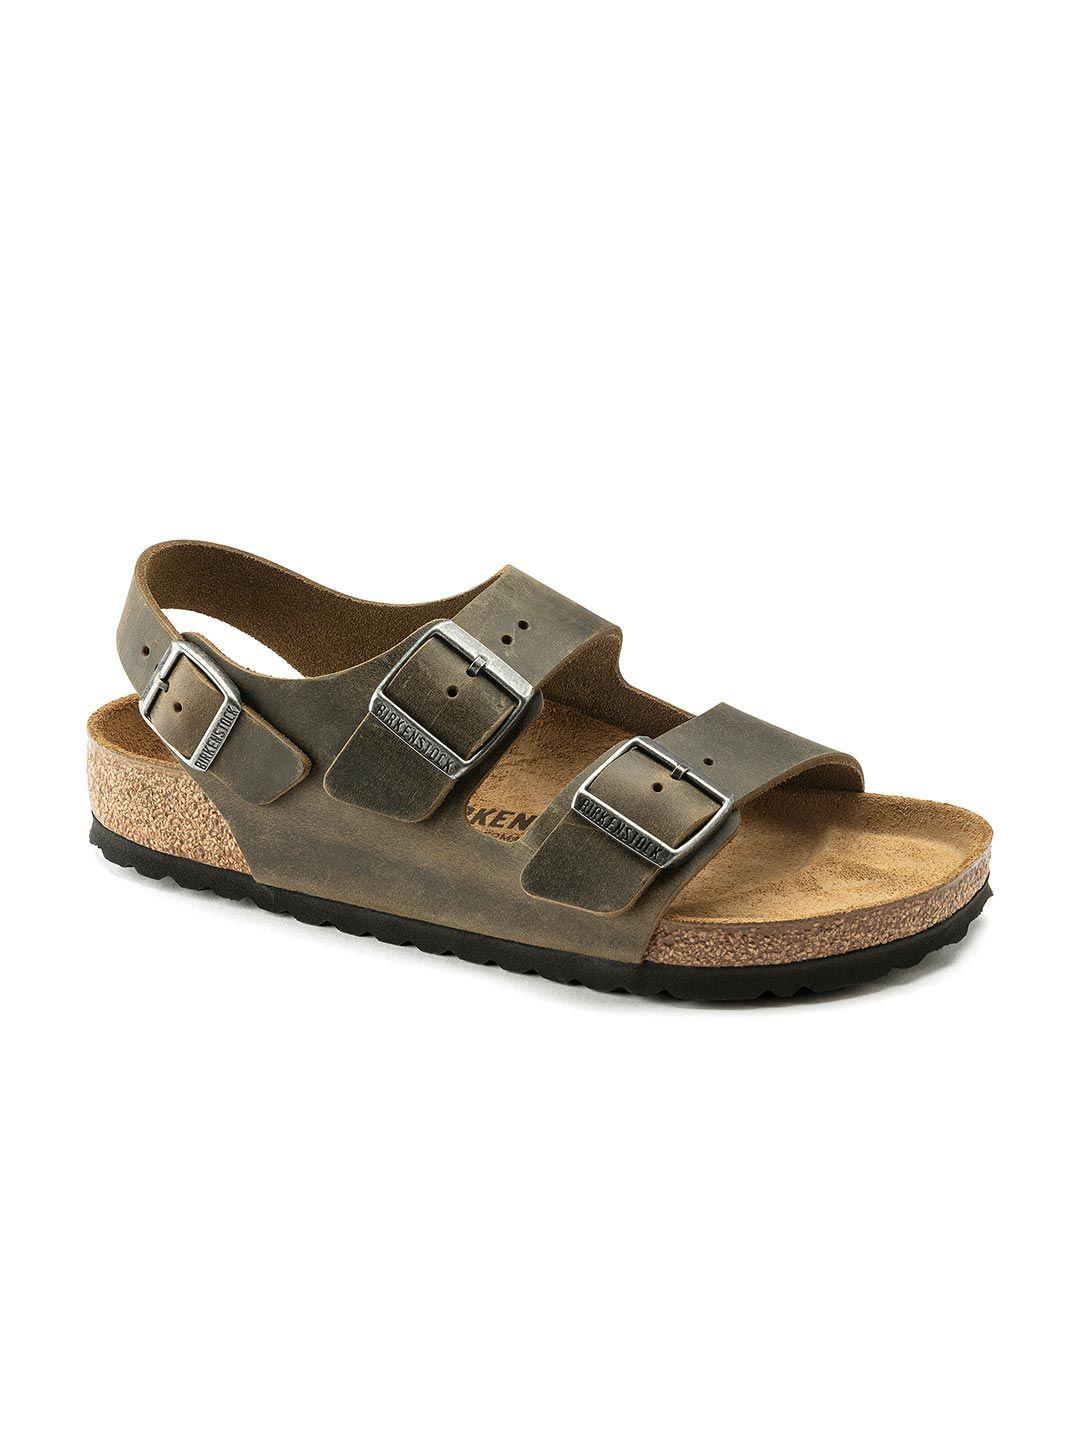 birkenstock unisex green milano suede regular width comfort sandals